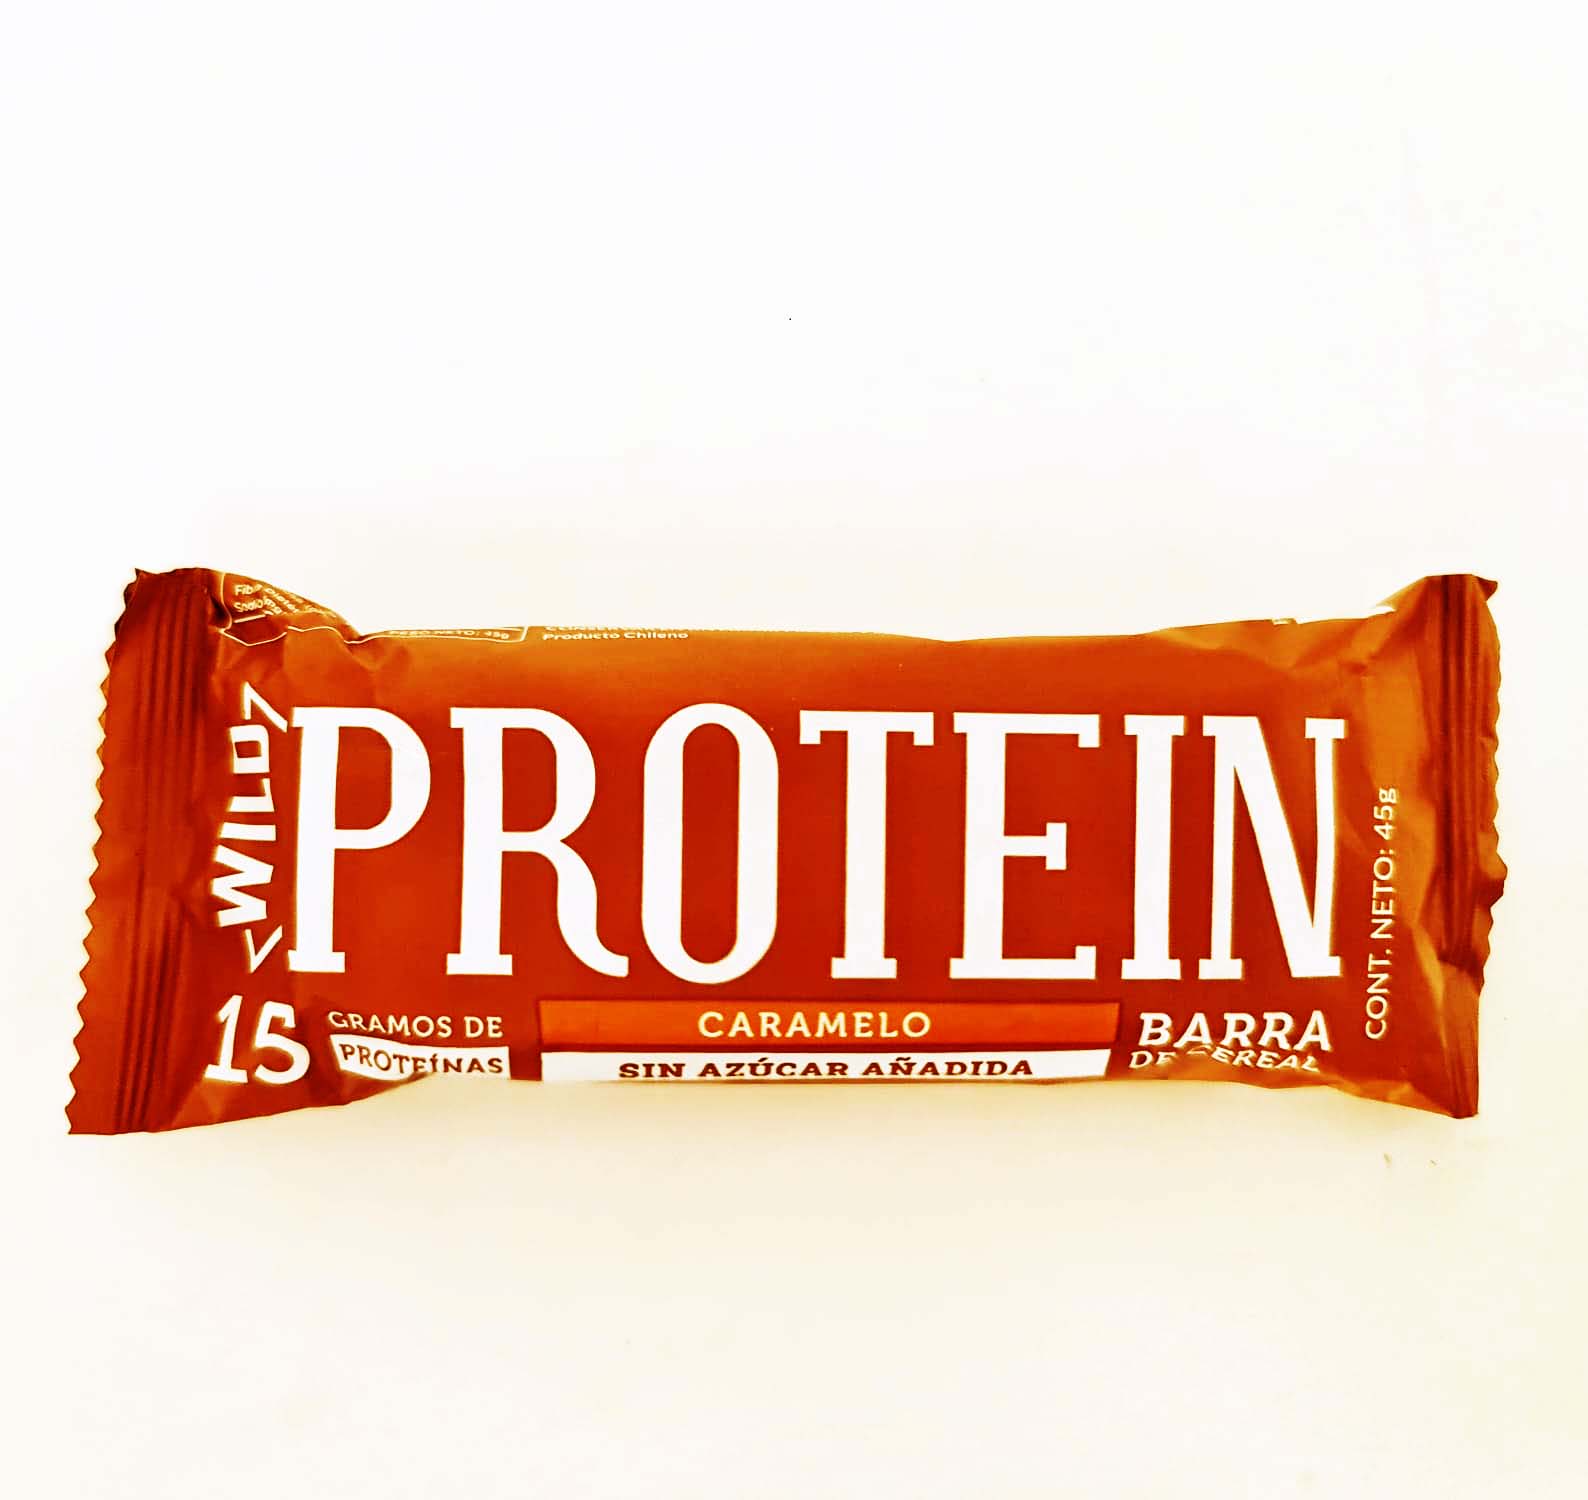 Caja 16 u wild protein caramelo, 16 X 45 GR, Wild Protein